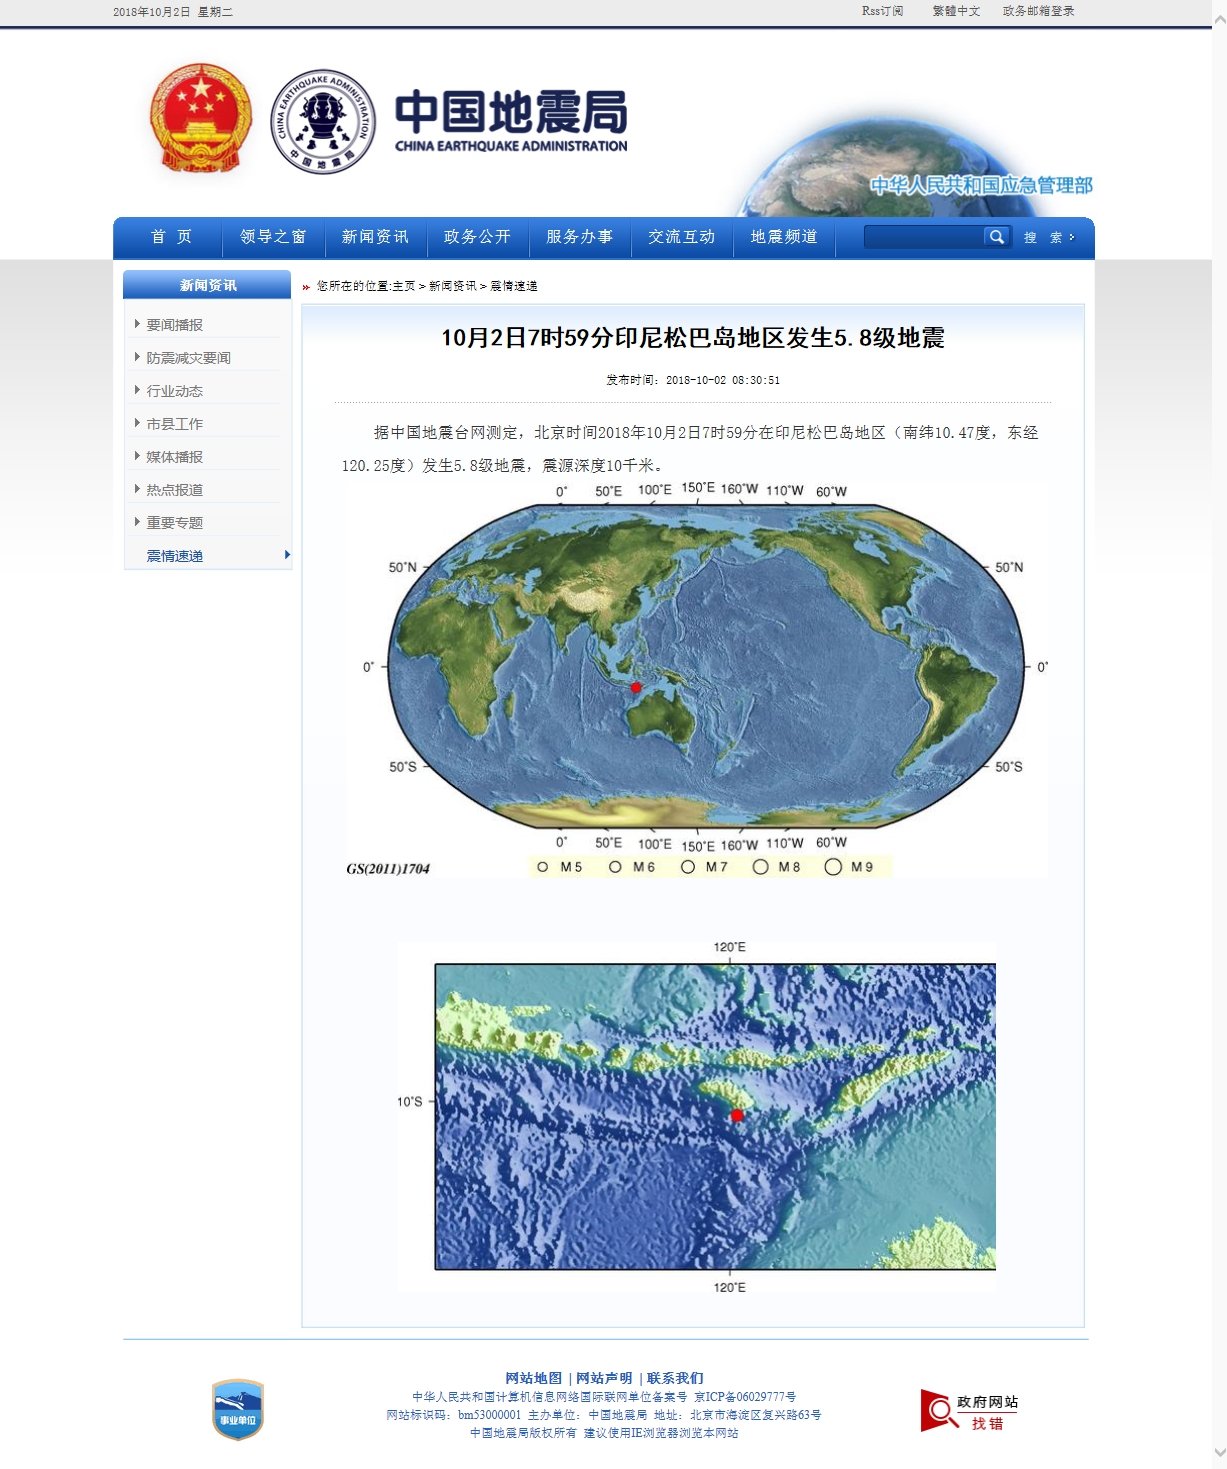 10月2日7时59分印尼松巴岛地区发生5.8级地震.jpg